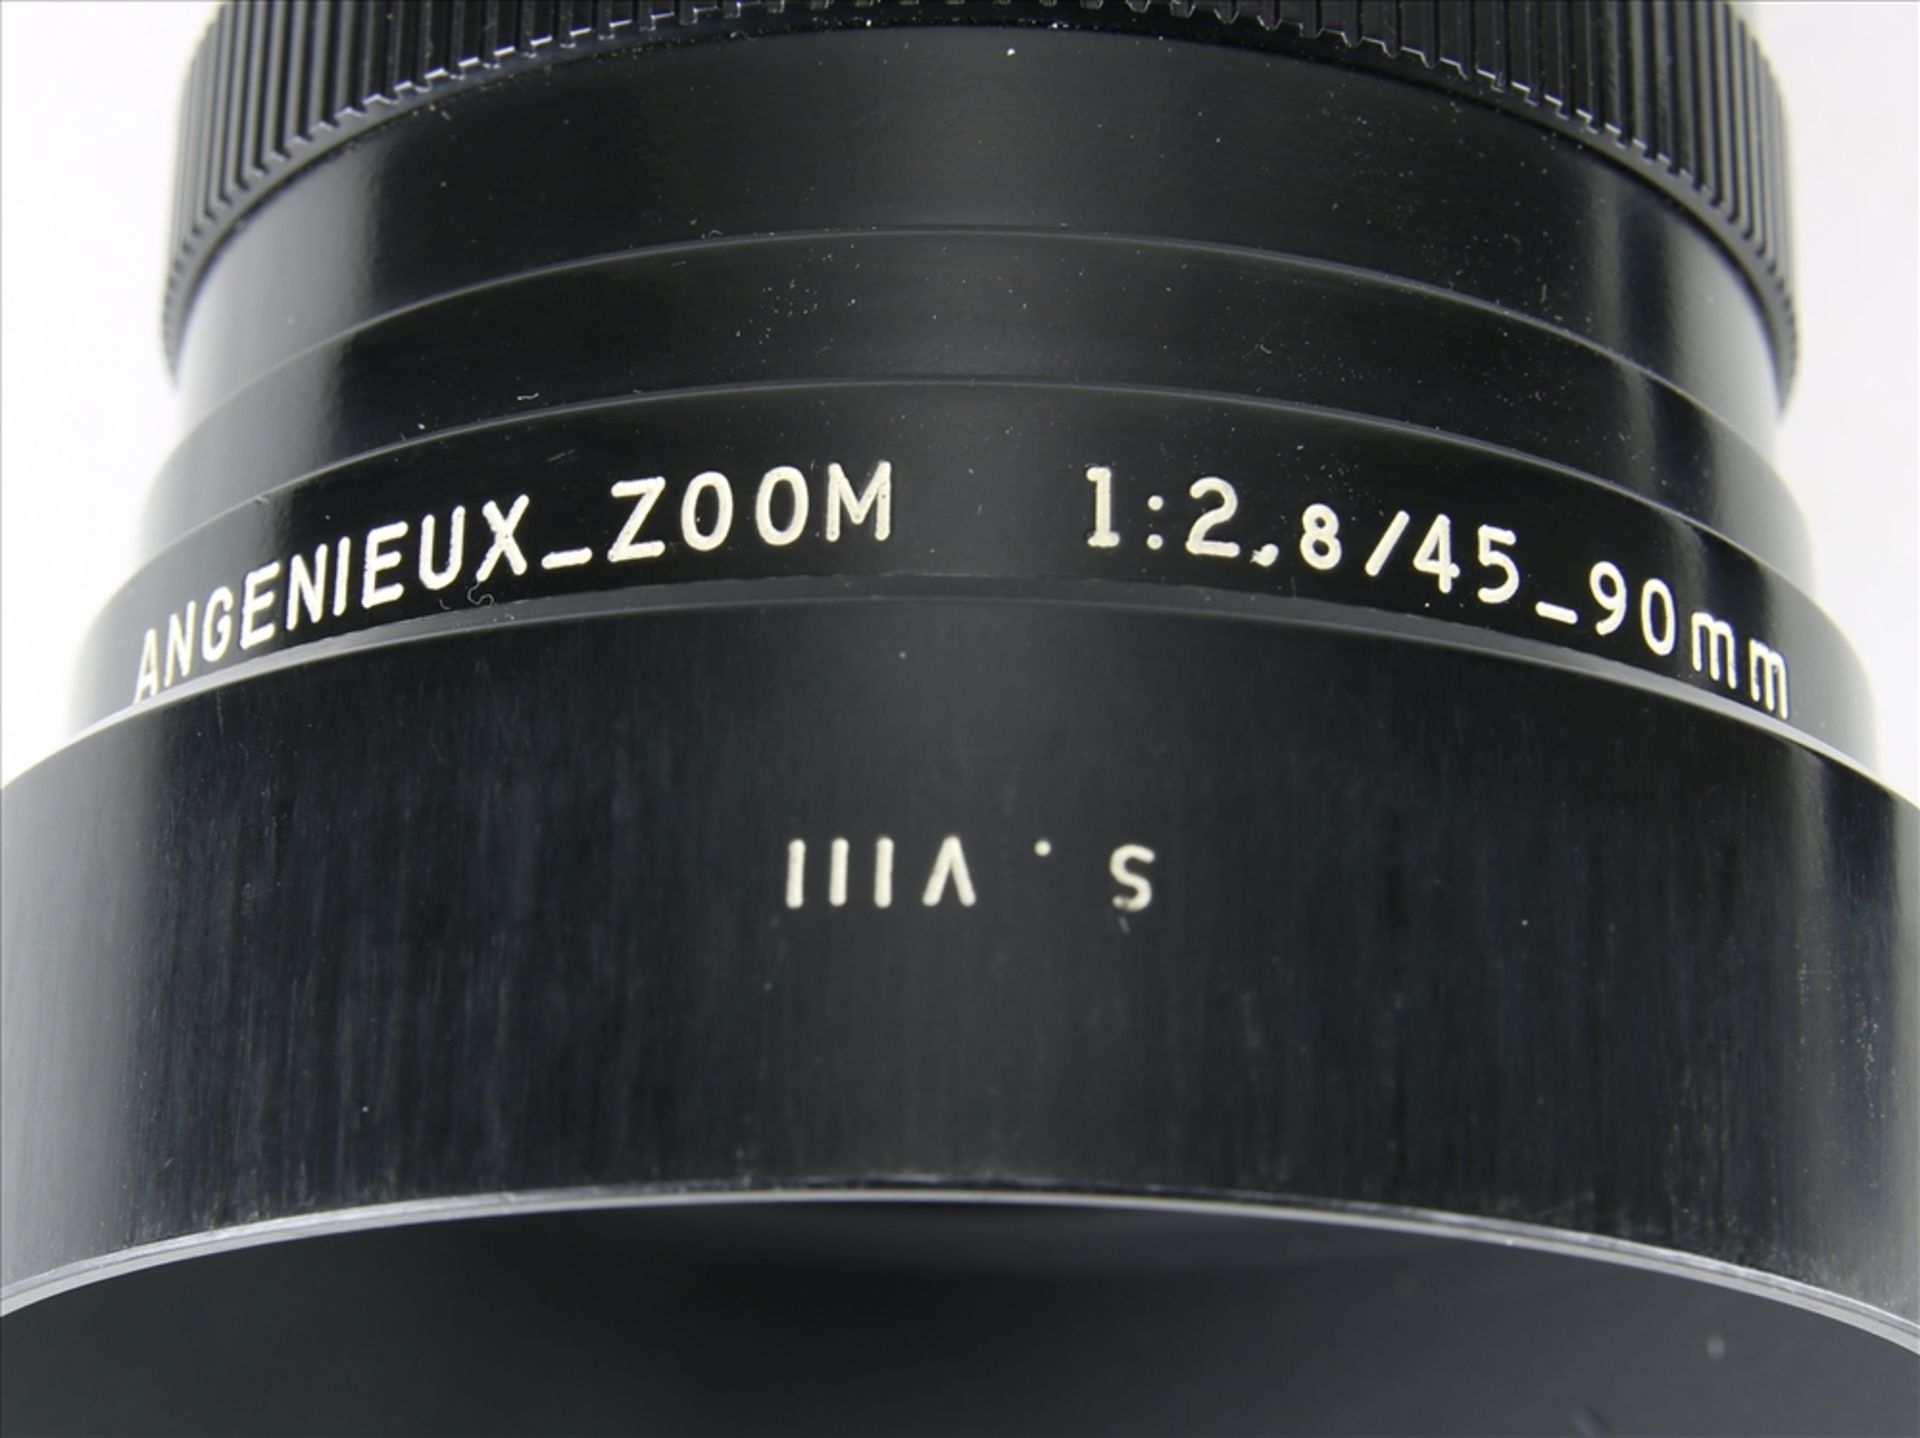 Leica Objektiv Angenieux France für Leitz - Leicaflex. 1:2,8 / 45 - 90 mm. Nicht geprüft. - Bild 3 aus 5